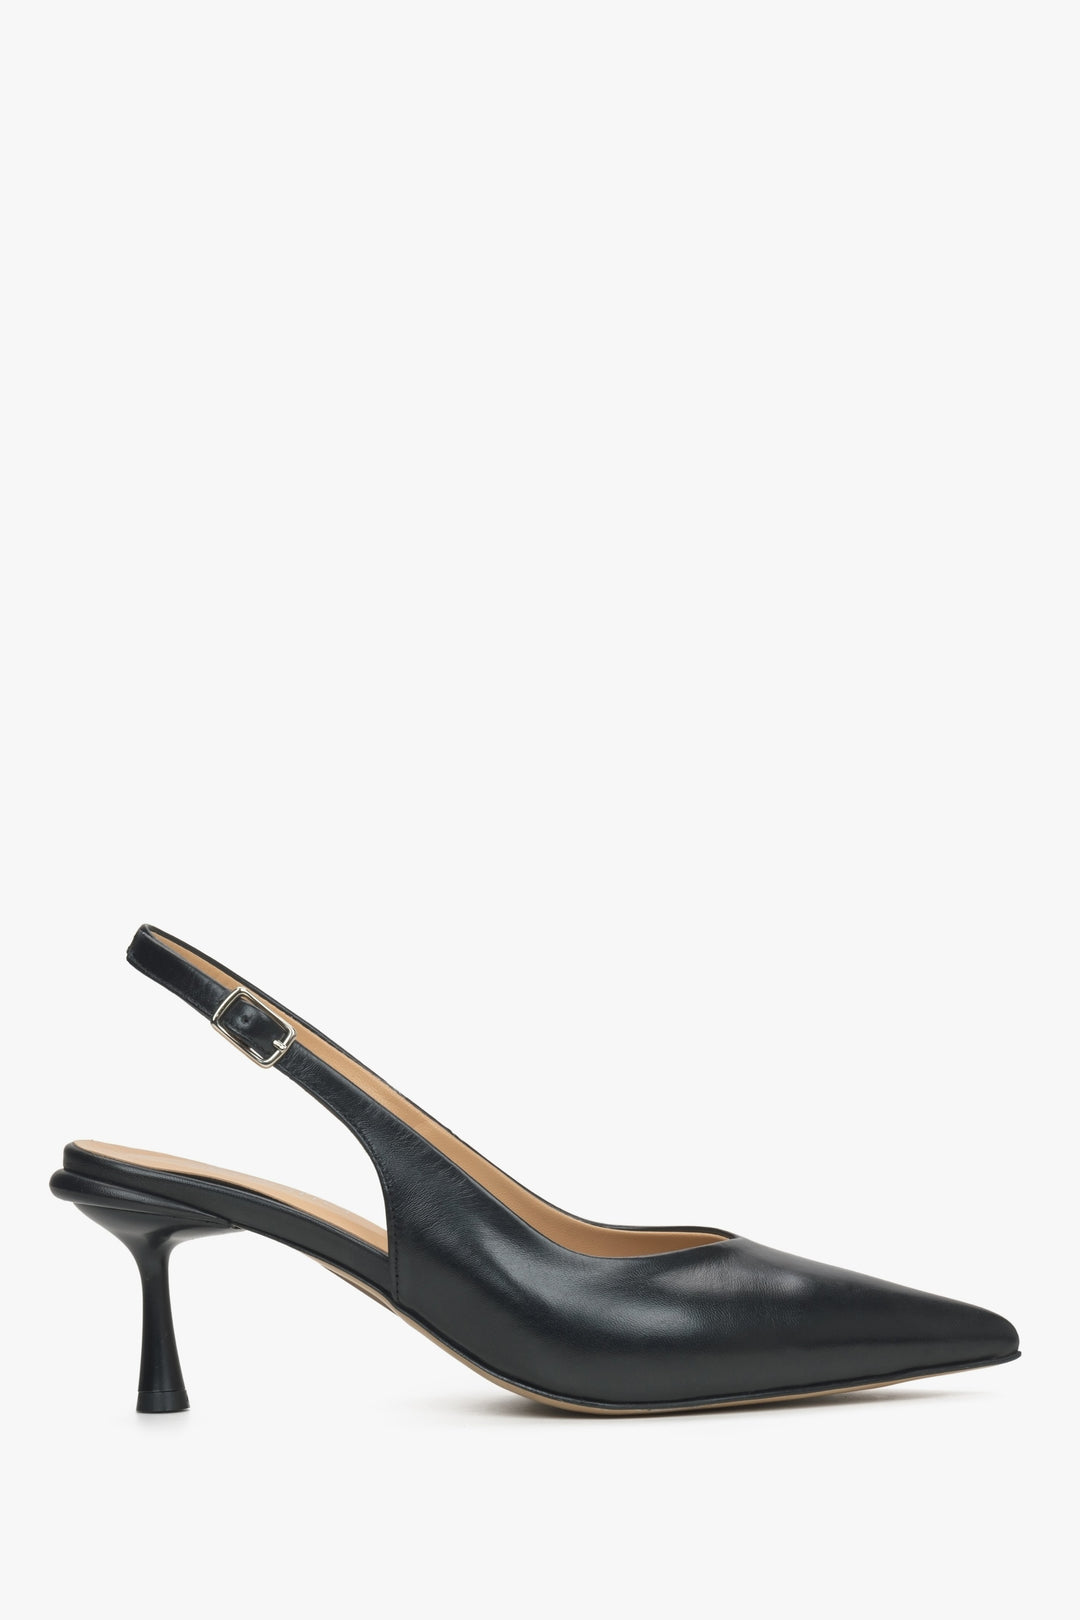 Women's black leather slingback shoes by Estro - shoe profile.